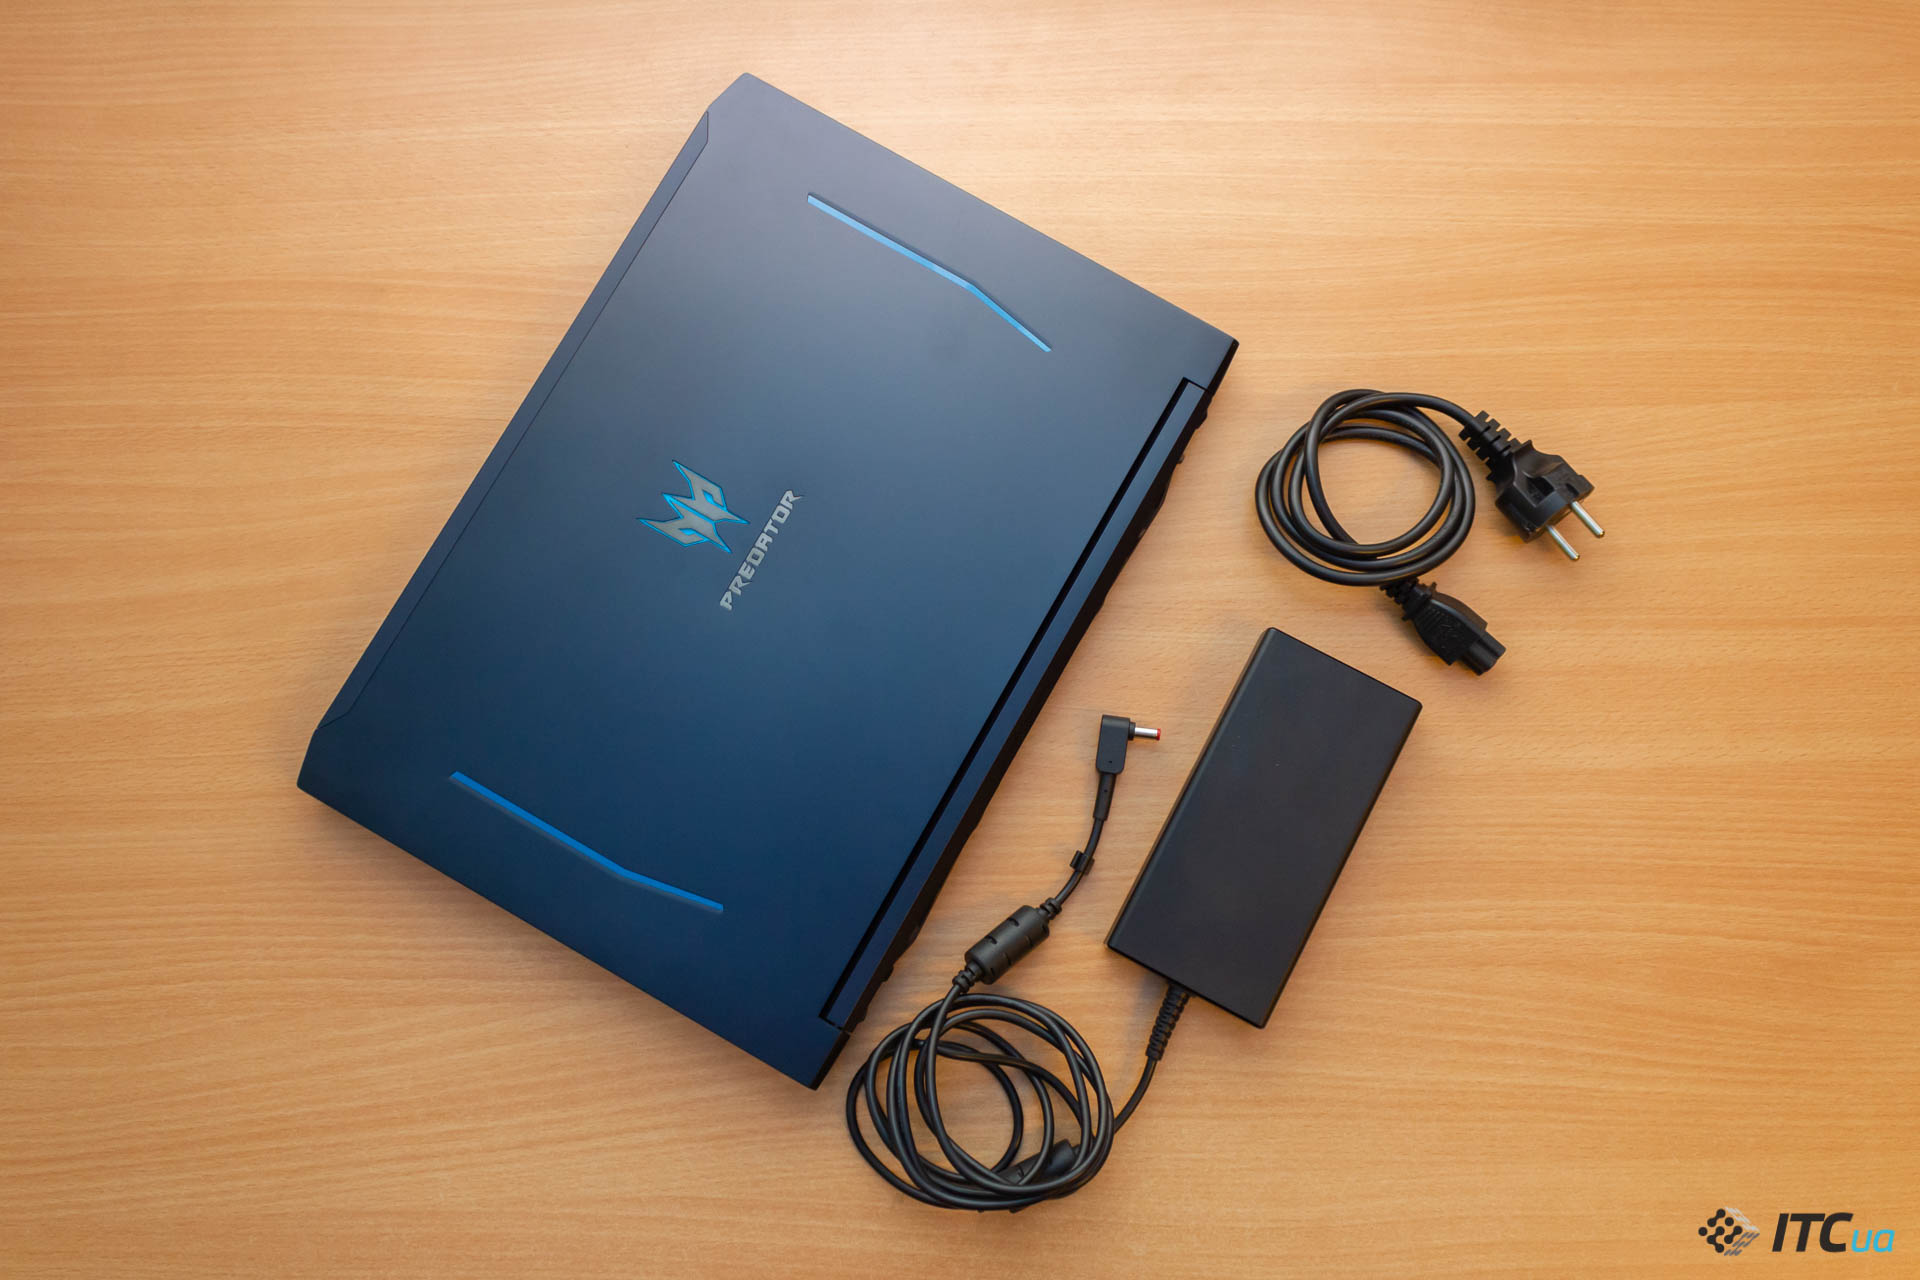 Обзор игрового ноутбука Acer Predator Helios 300 нового поколения